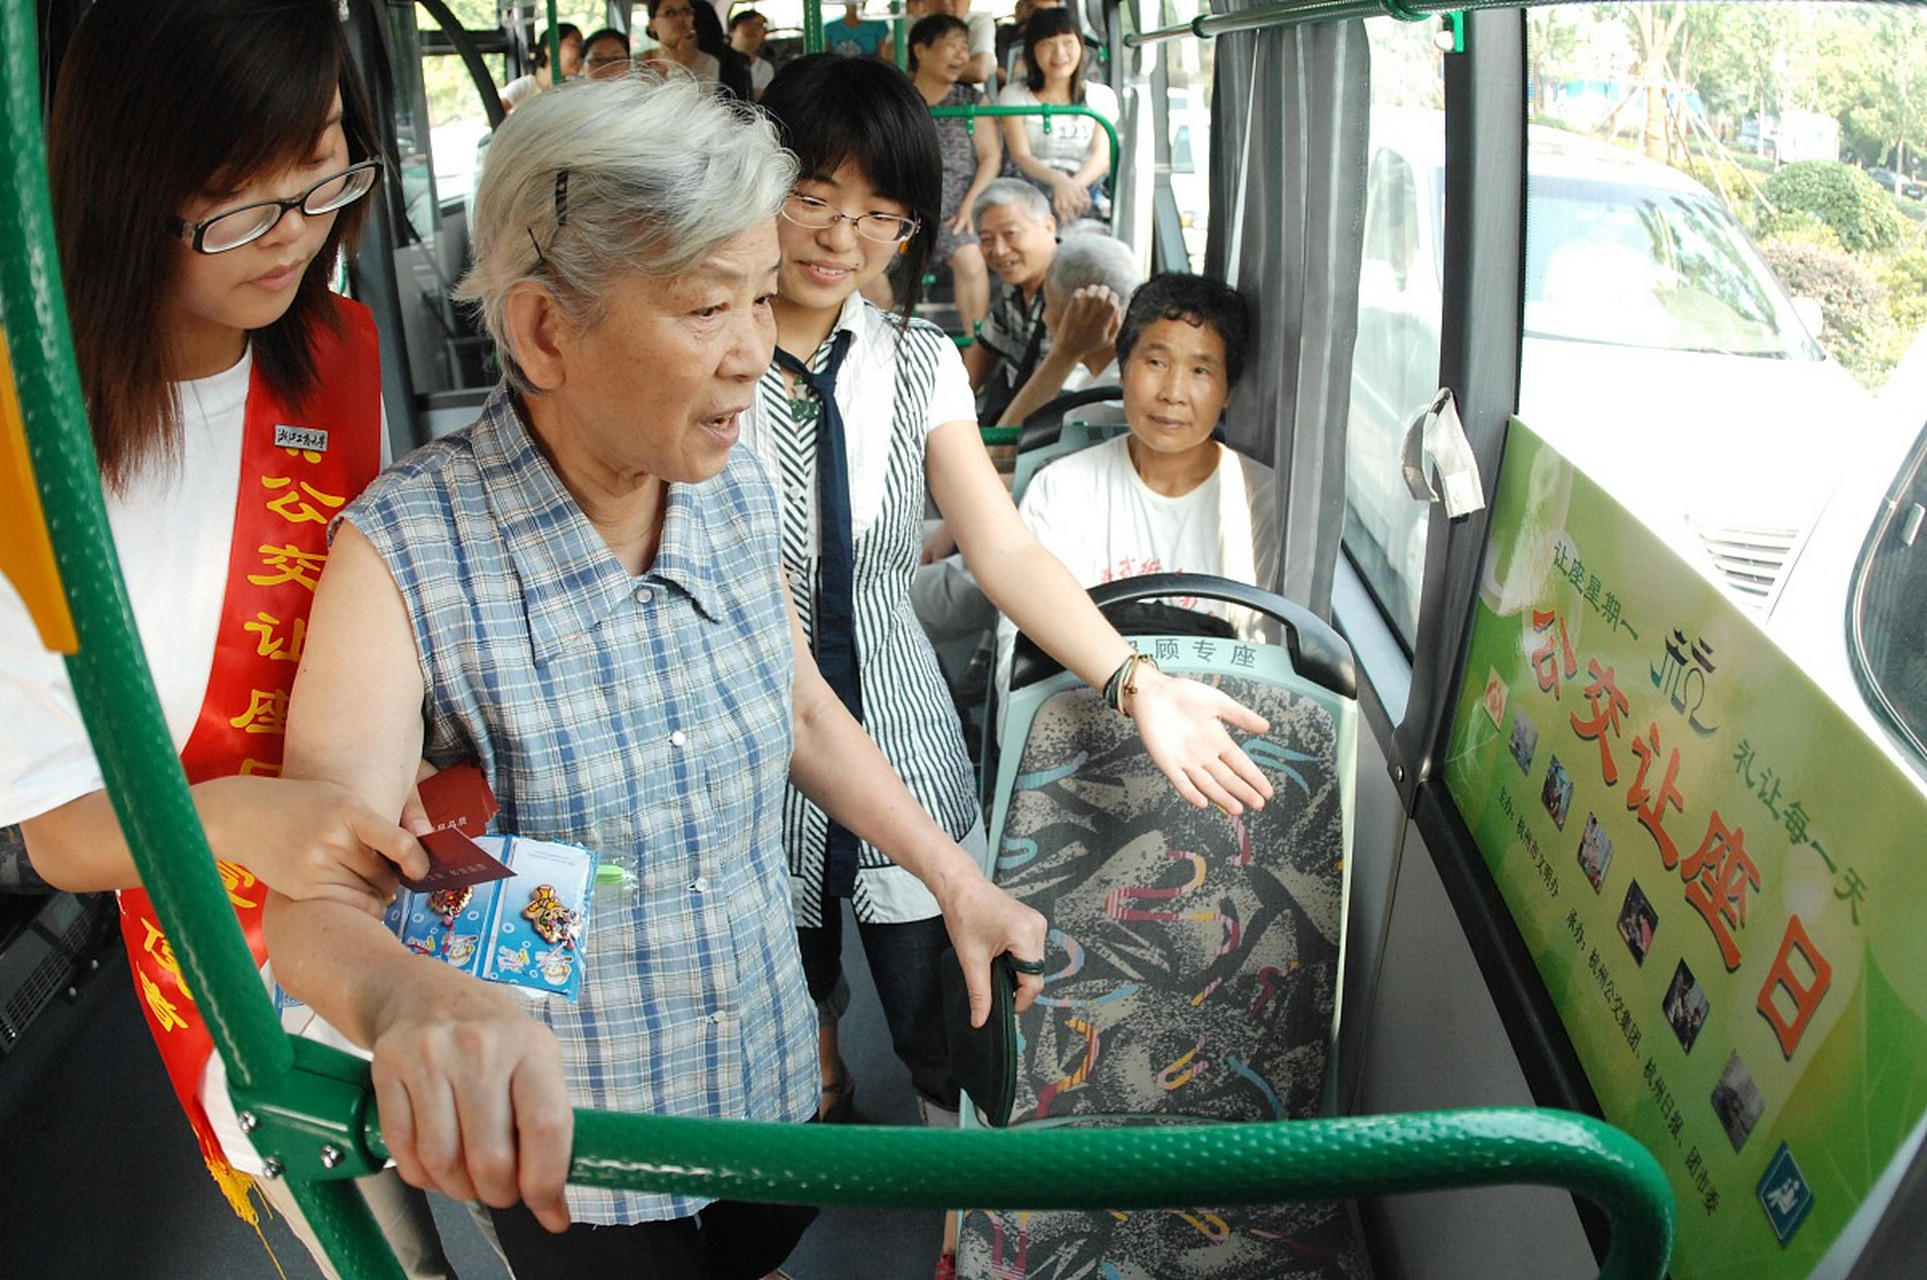 9月27日的早高峰,一位年长的乘客对一个坐着的小孩提出了强硬的让座